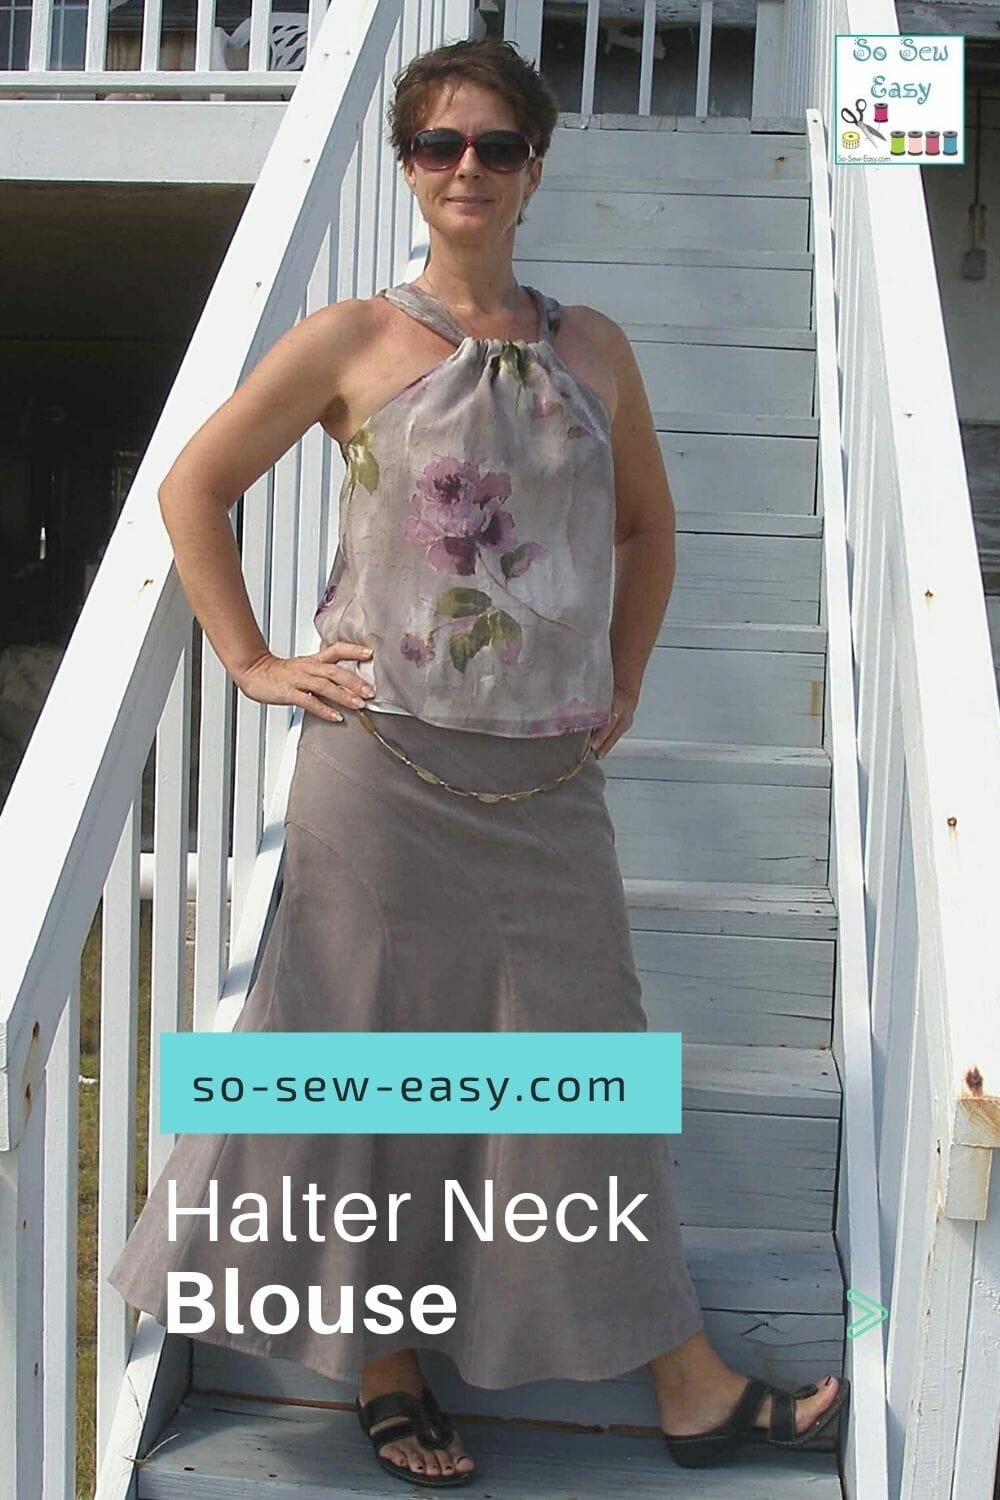 Self Halter Neck in | So Sew Easy